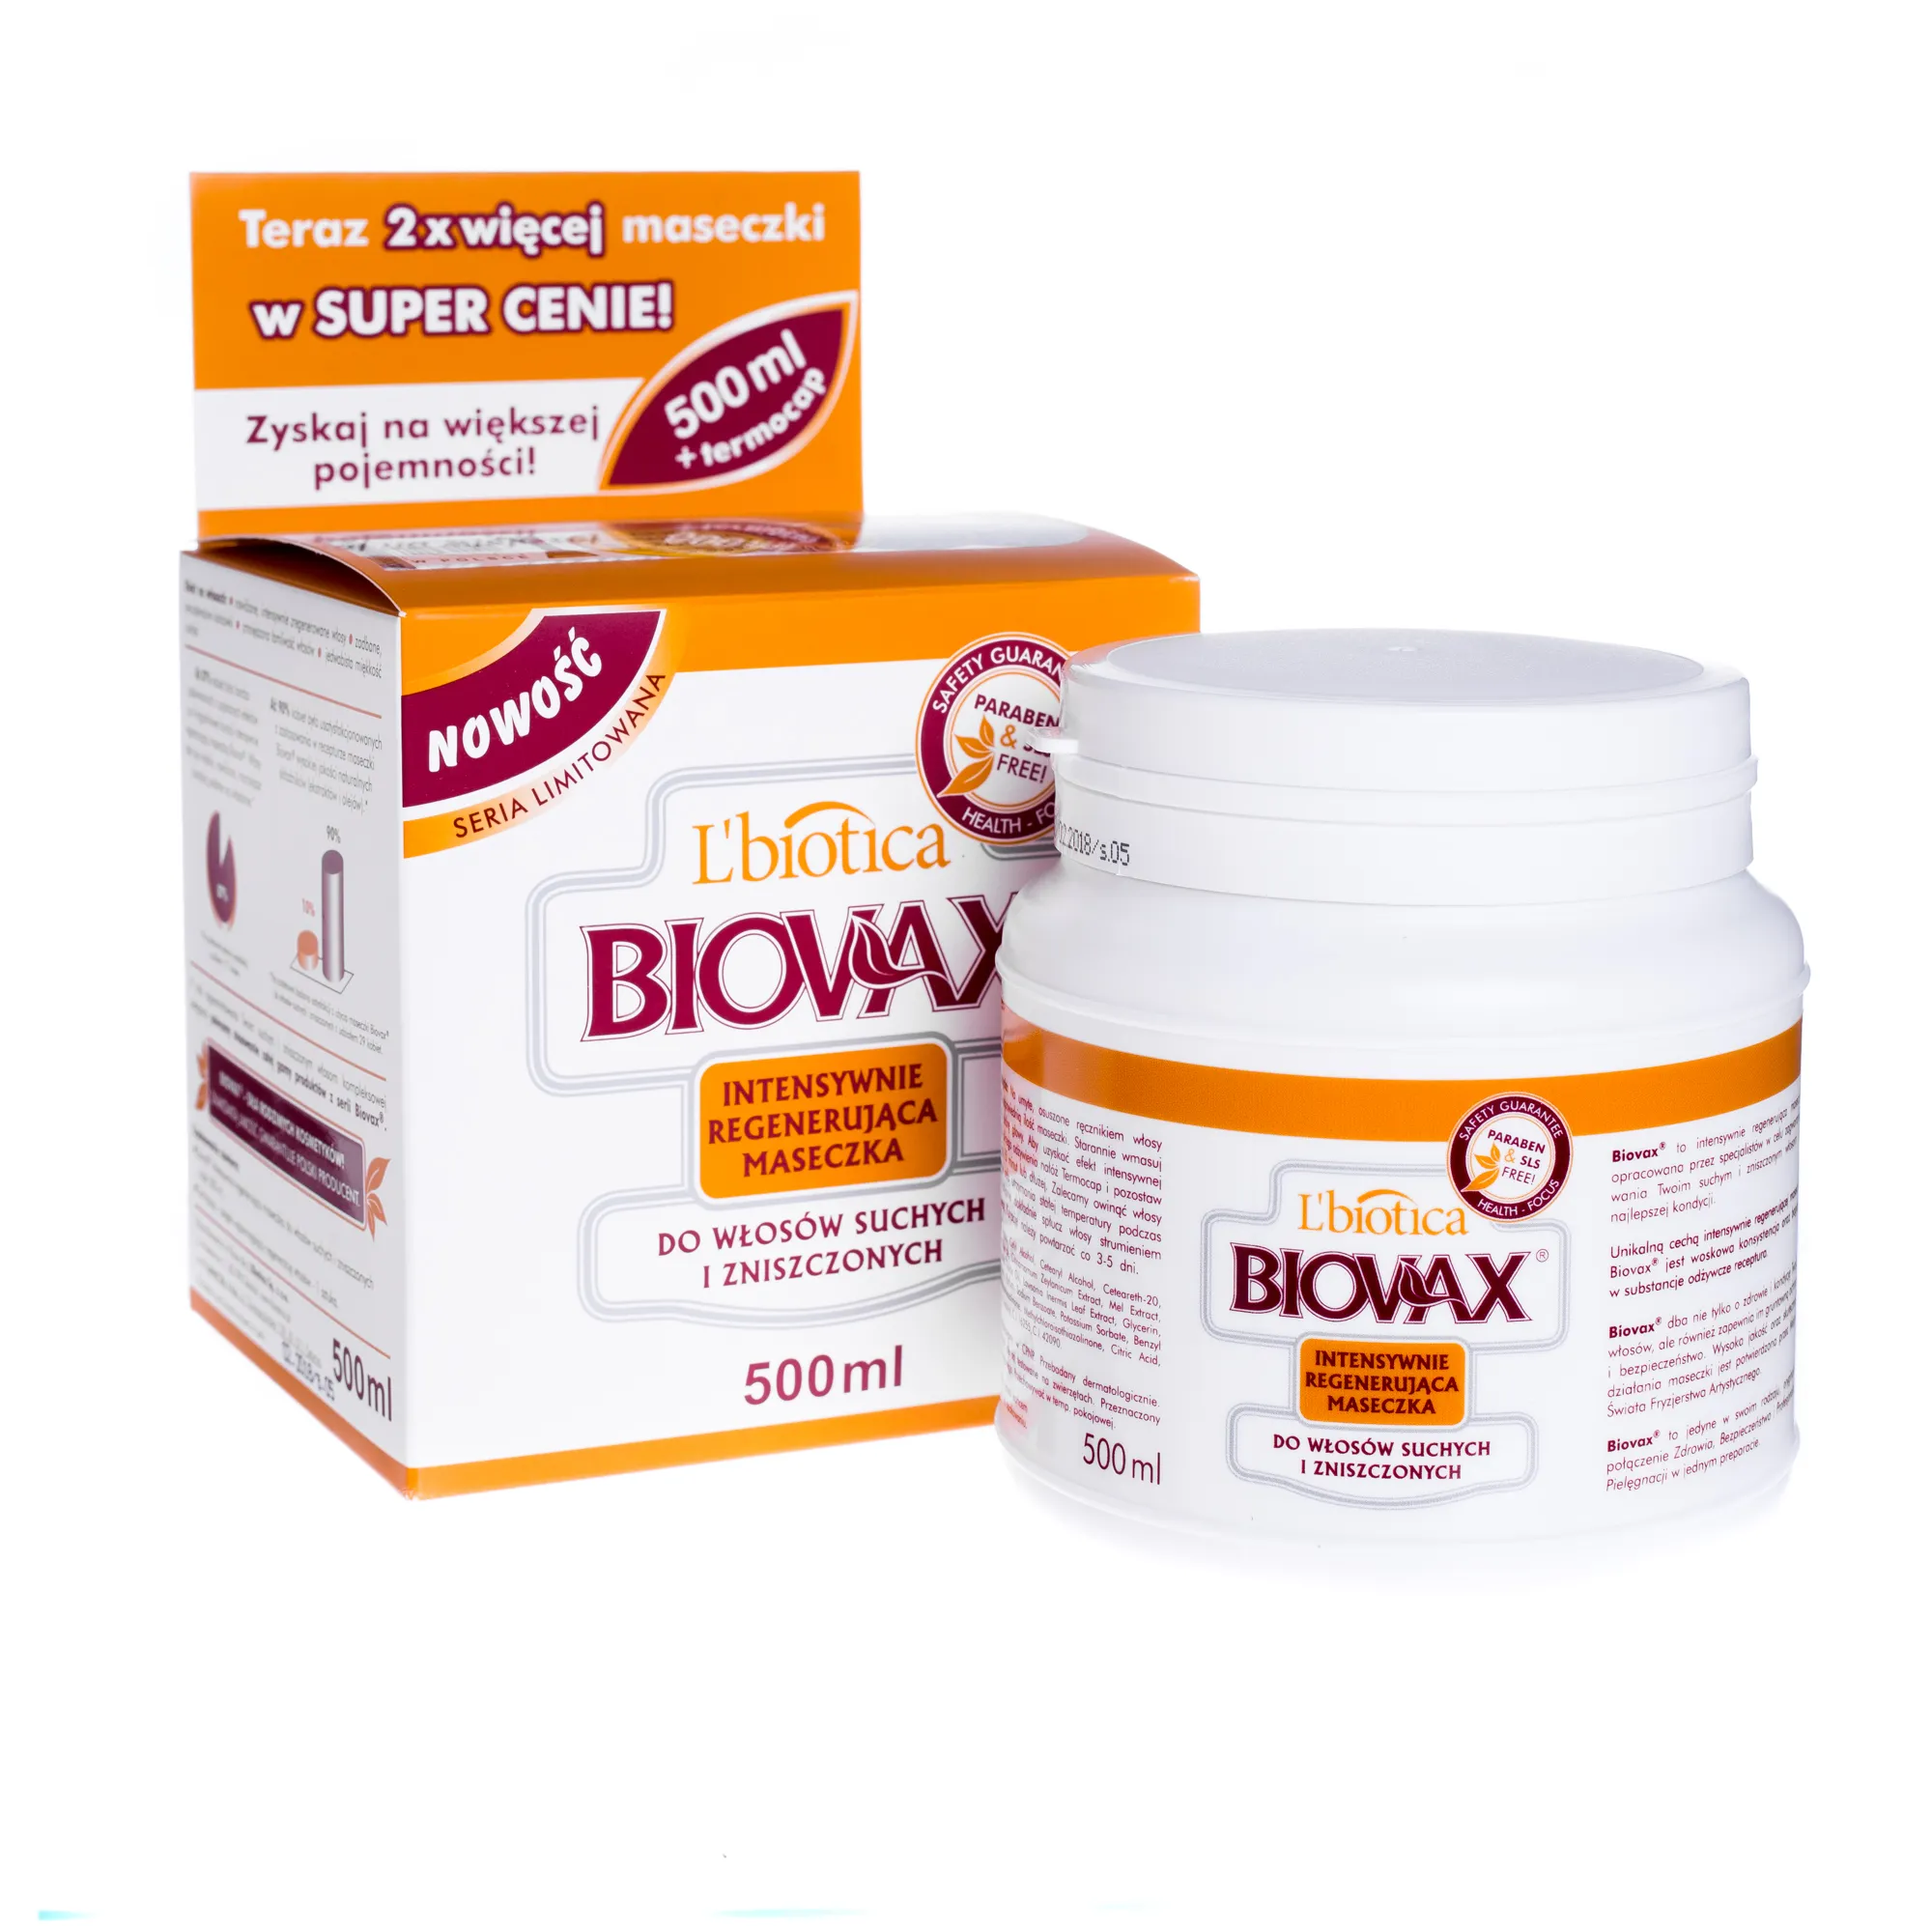 L'biotica BIOVAX, Intensywnie regenerująca maseczka do włosów suchych i zniszczonych, 500 ml 